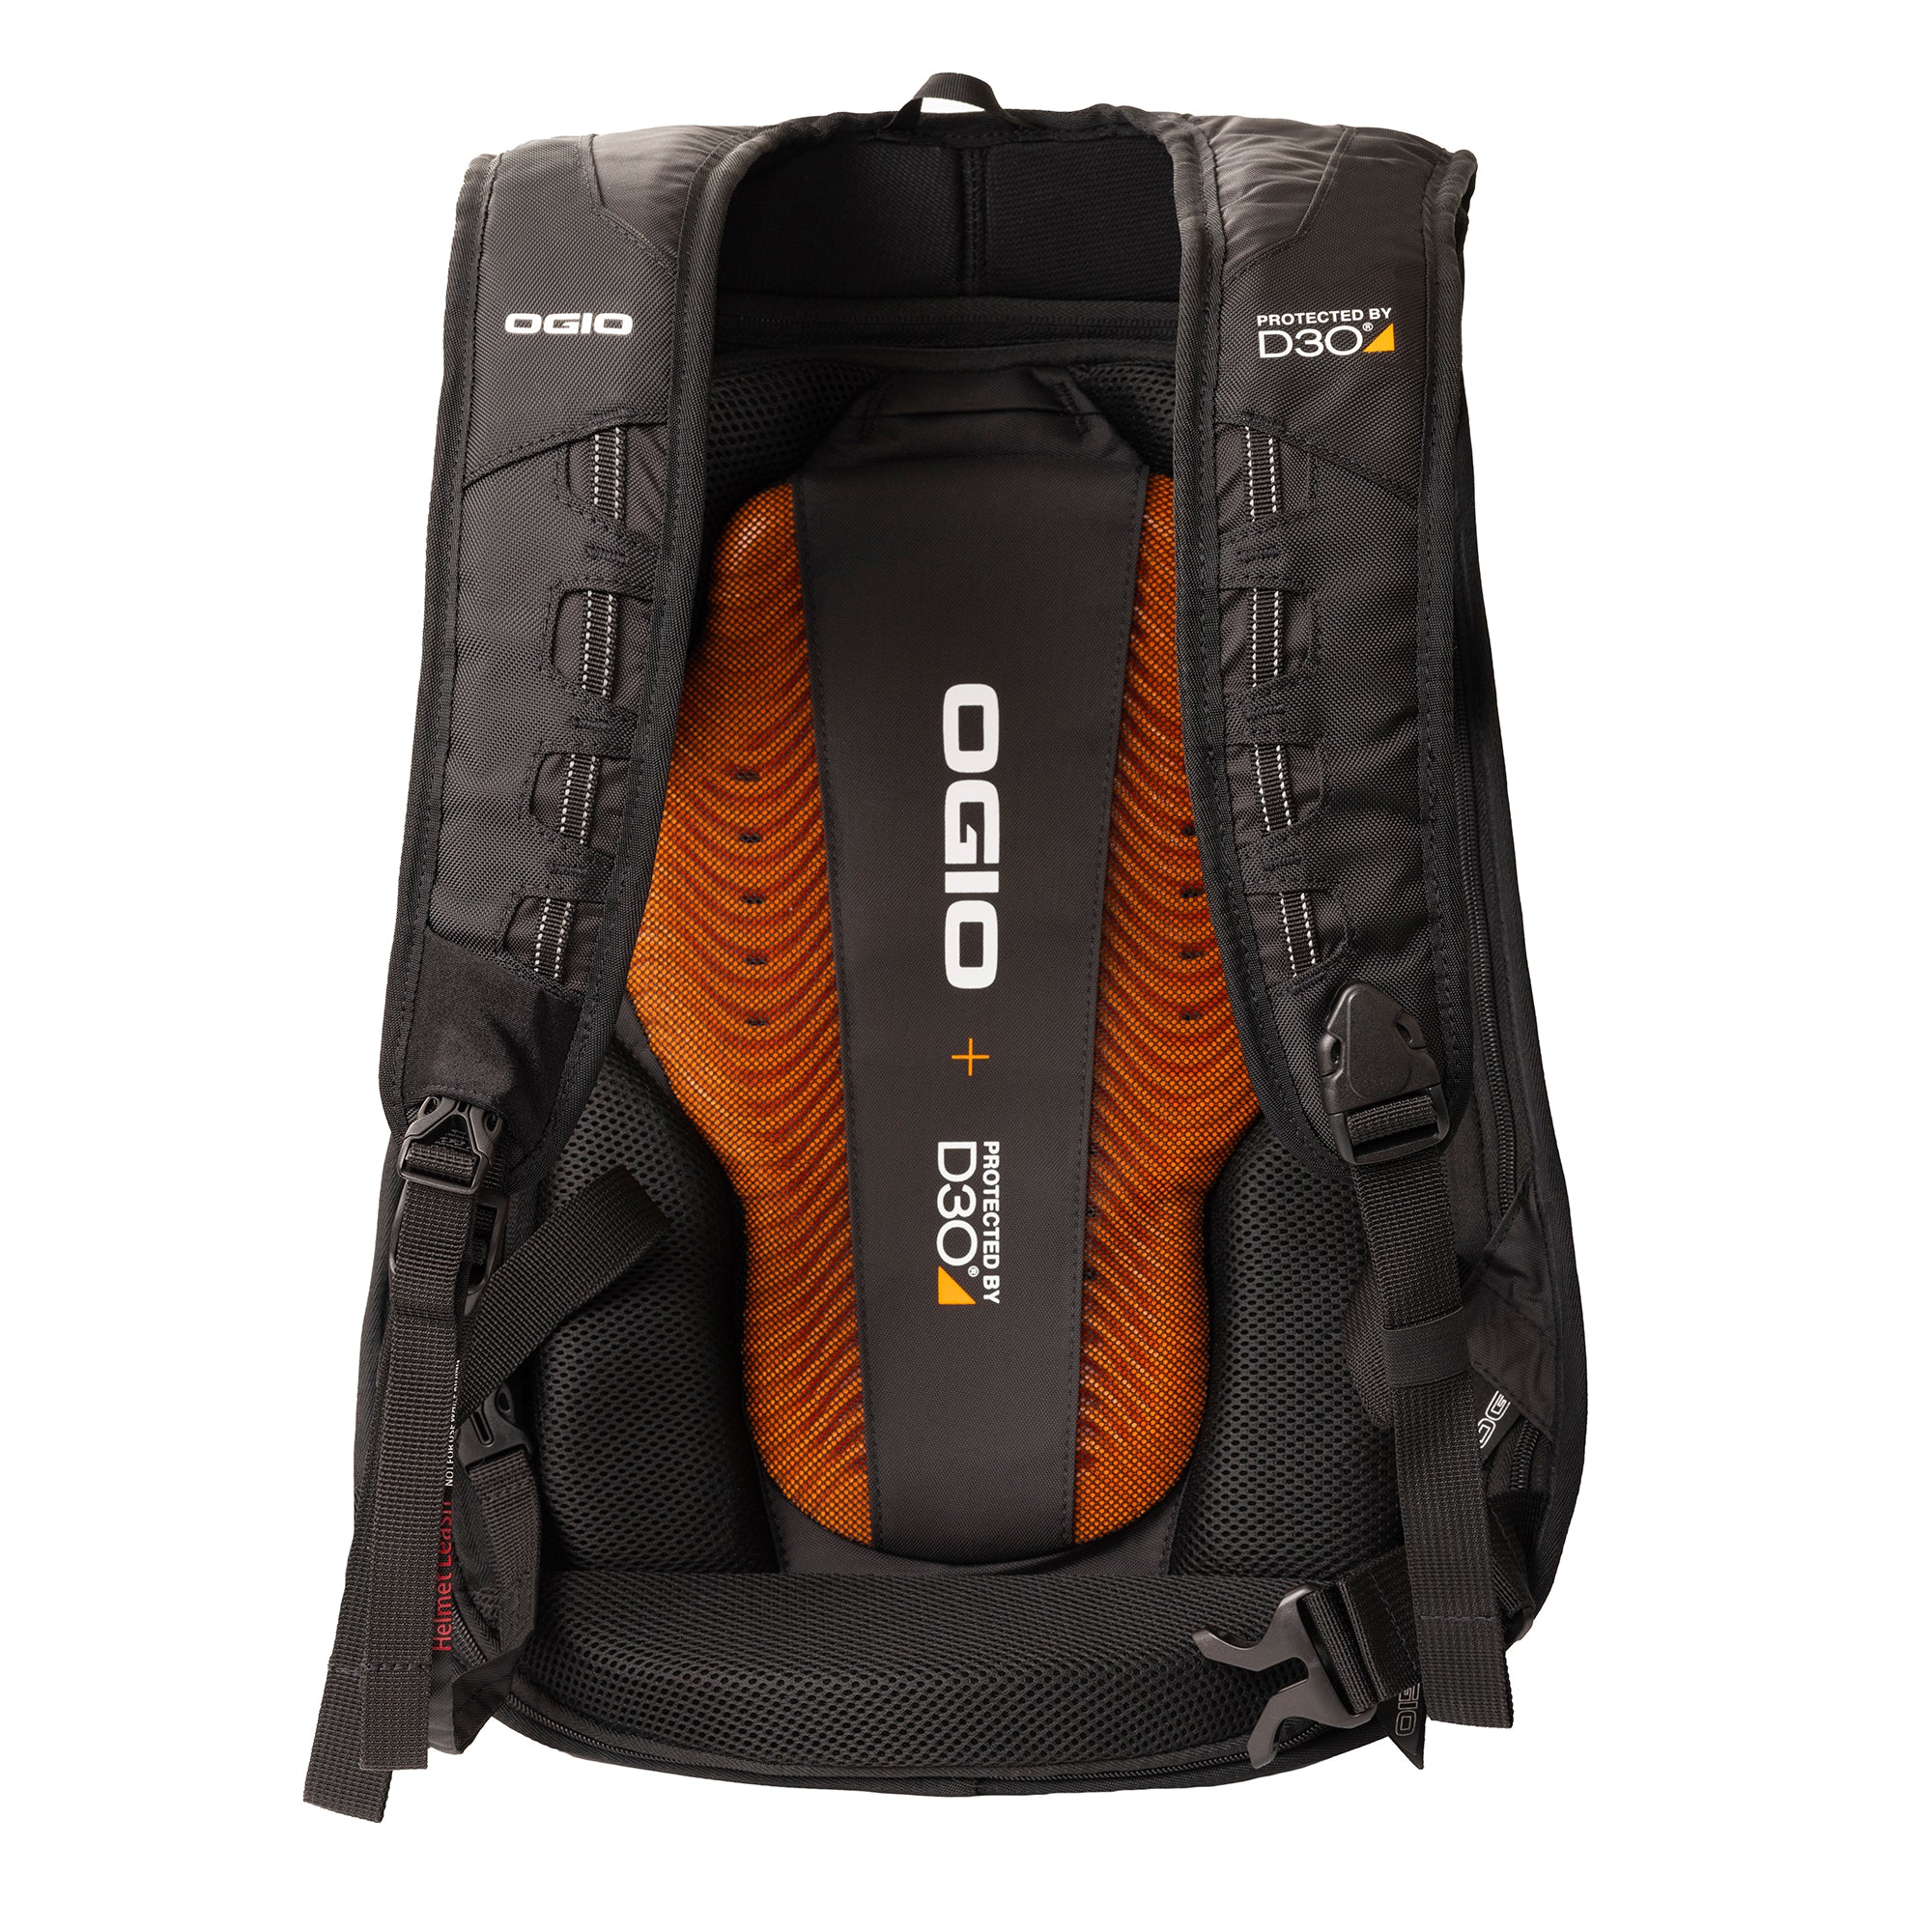 Protections - Sac à dos moto avec dorsale D3O Ogio Mach 5